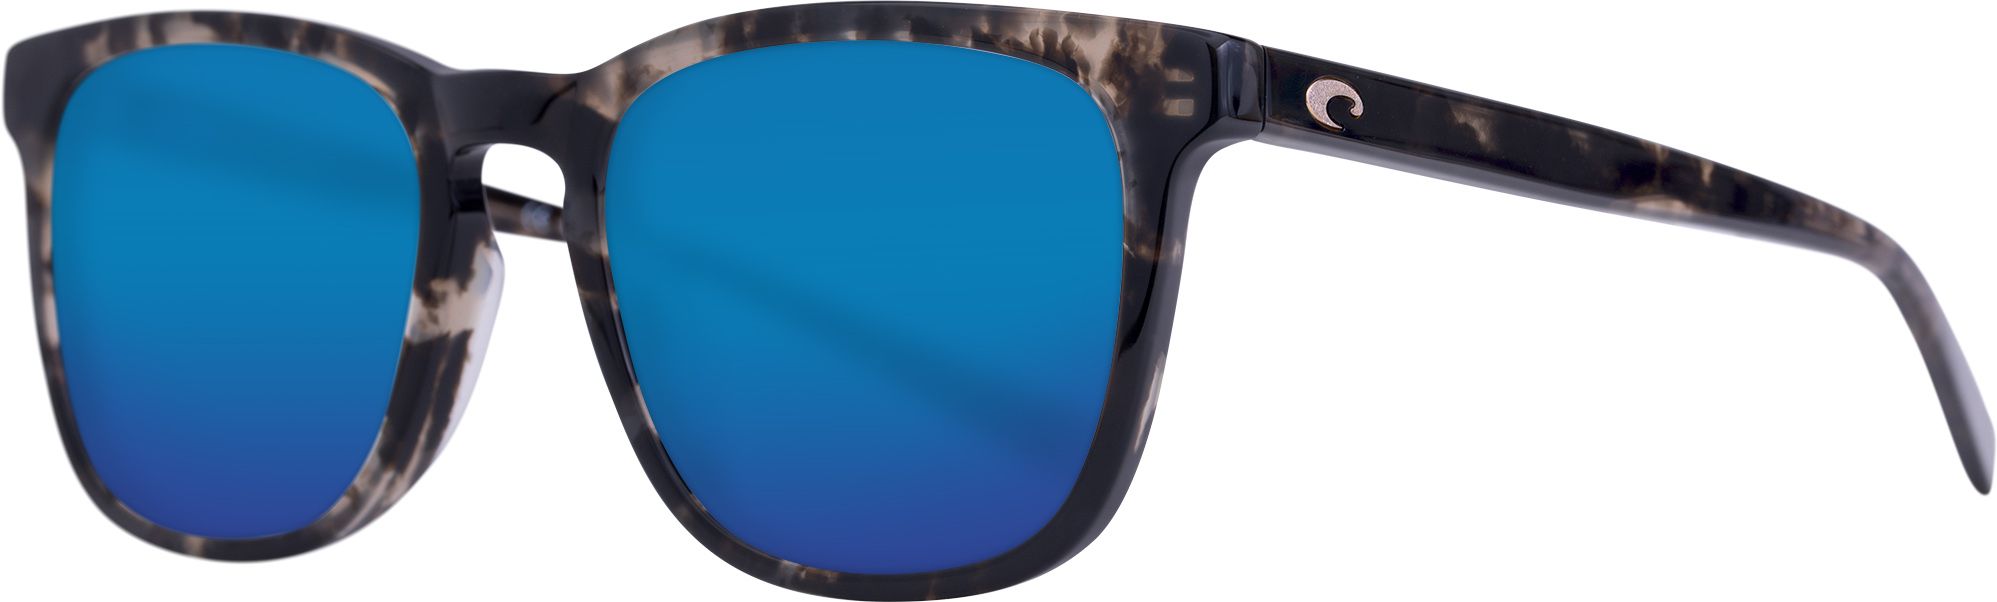 Photos - Sunglasses Costa Del Mar Sullivan 580G Polarized , Men's, Black/Blue | Fath 